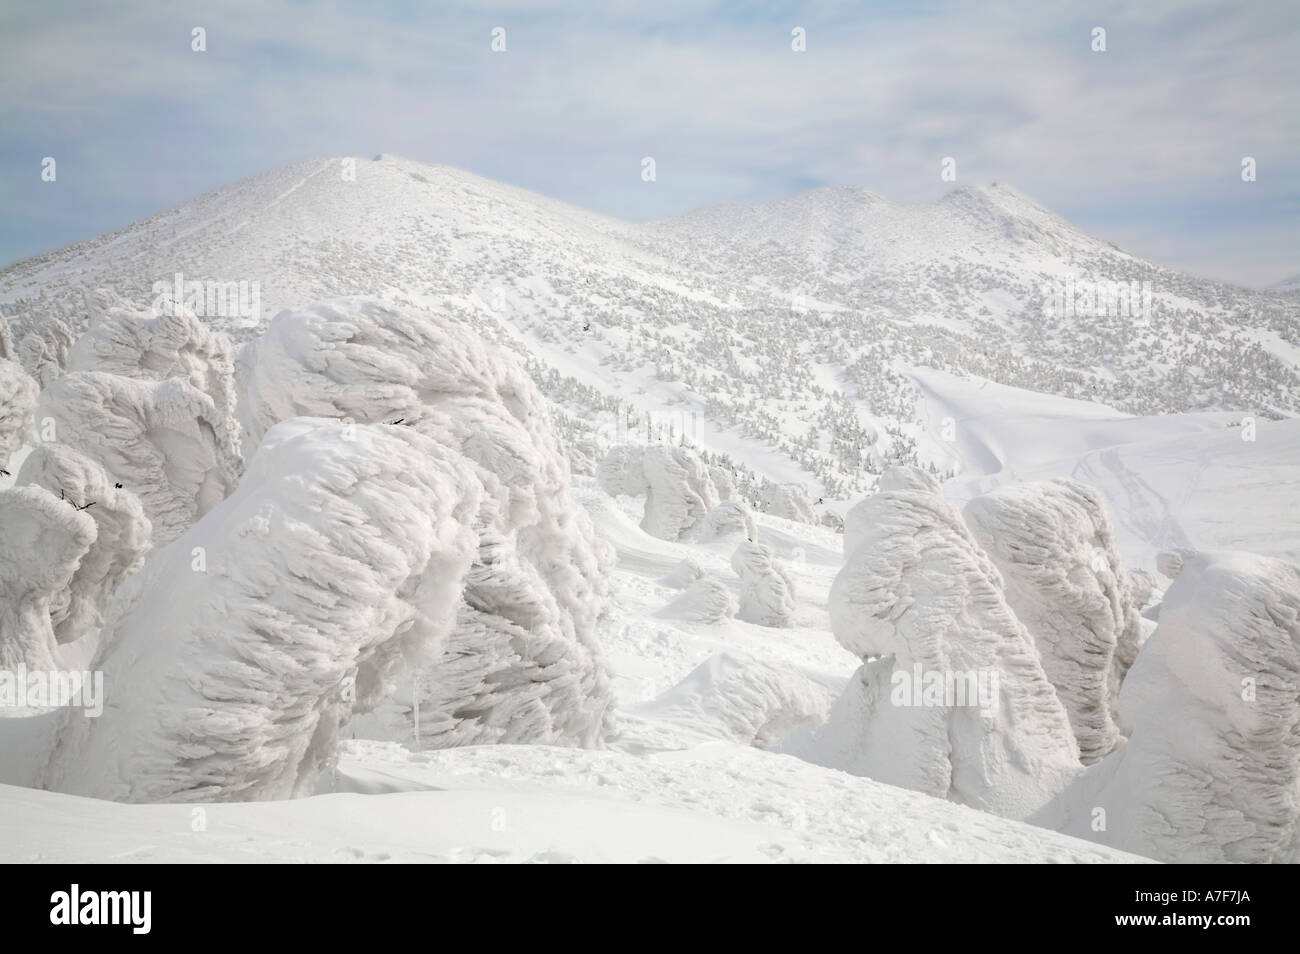 Schnee-Monster - Bäume mit Schnee im Winter Mount Verwaltungssitz Japan auf sie gefroren Stockfoto